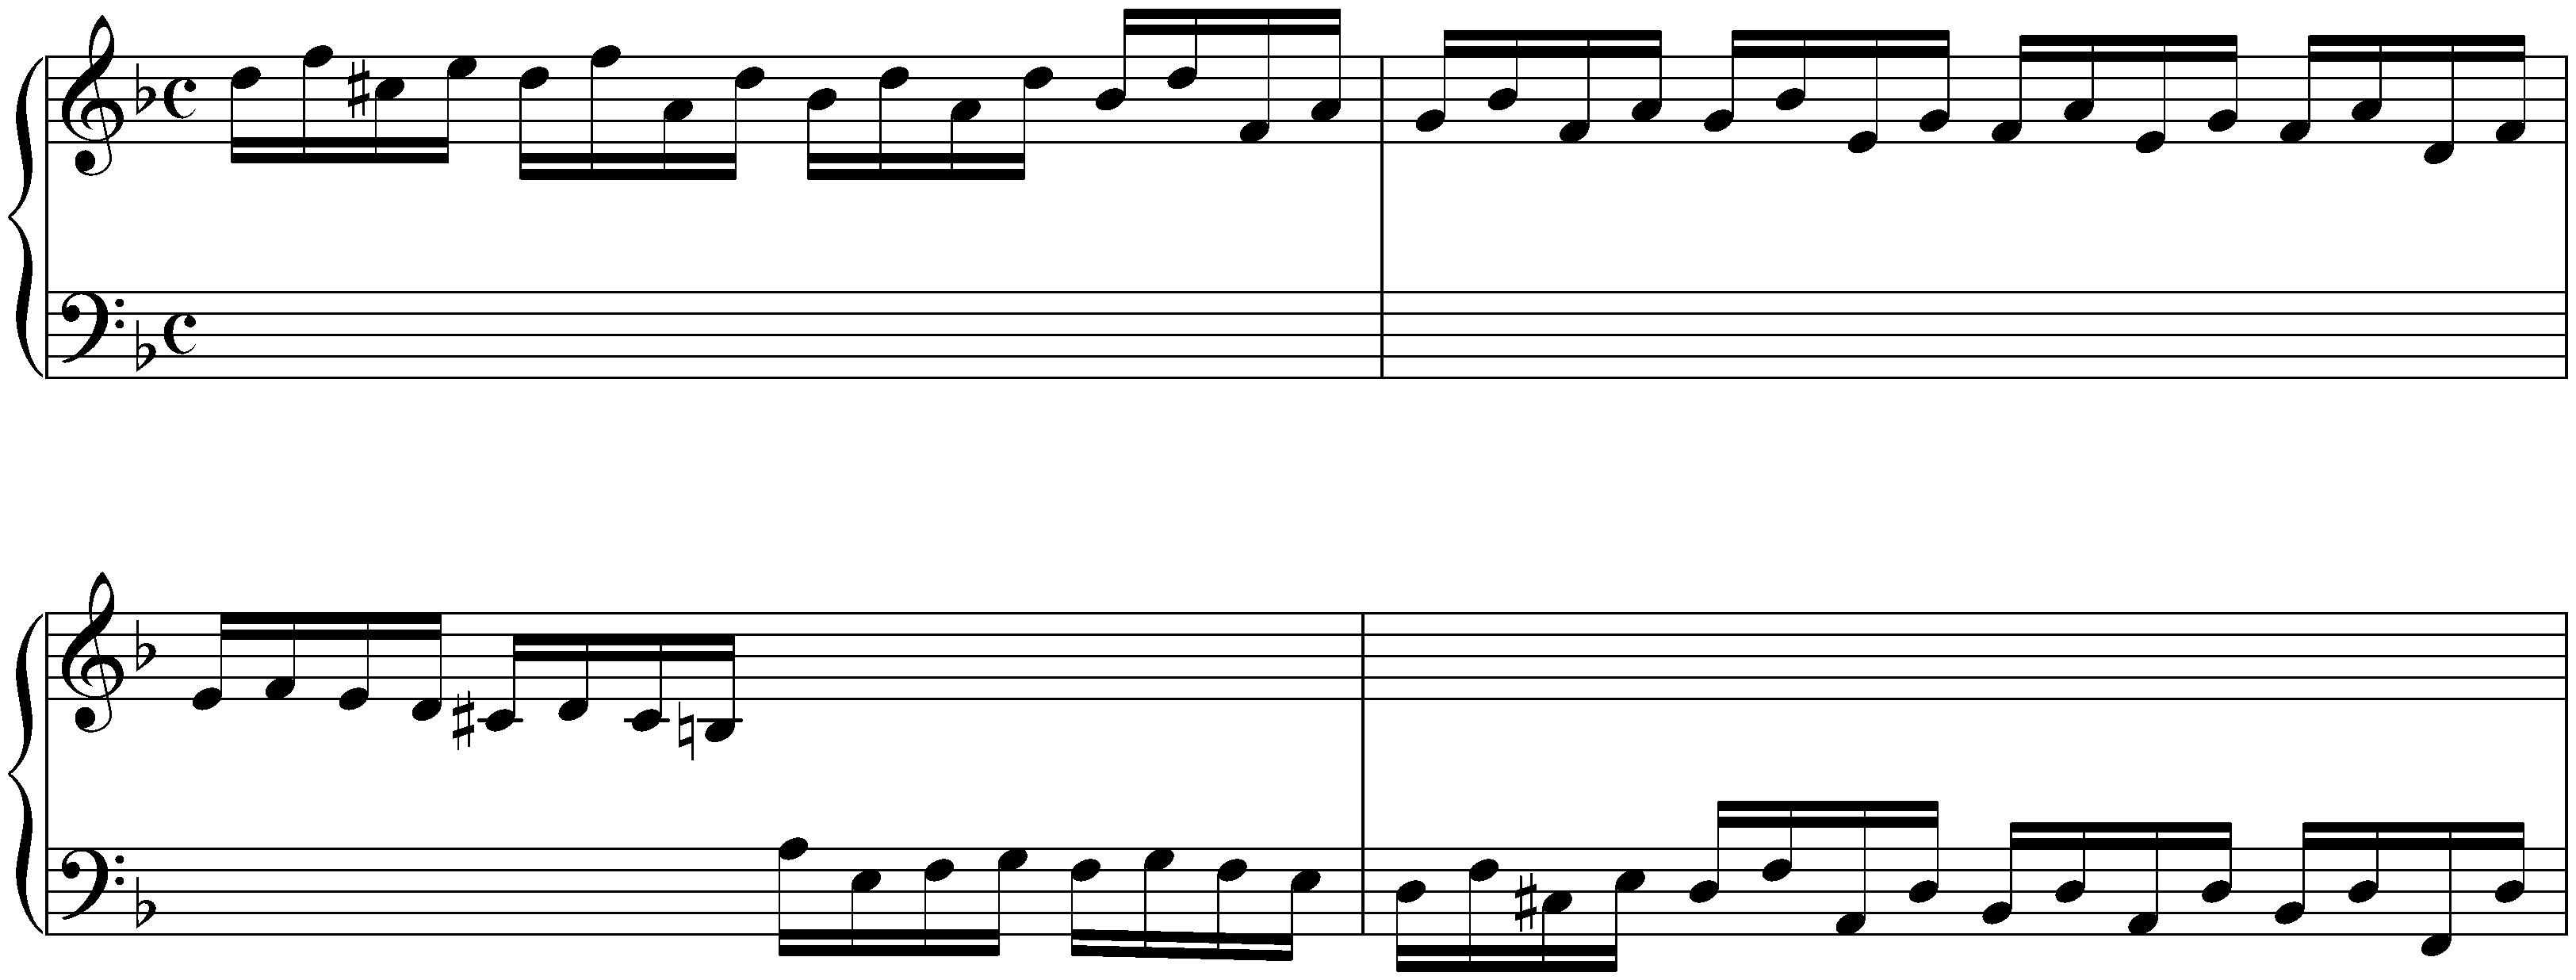 Preludio in D minor, HWV 564